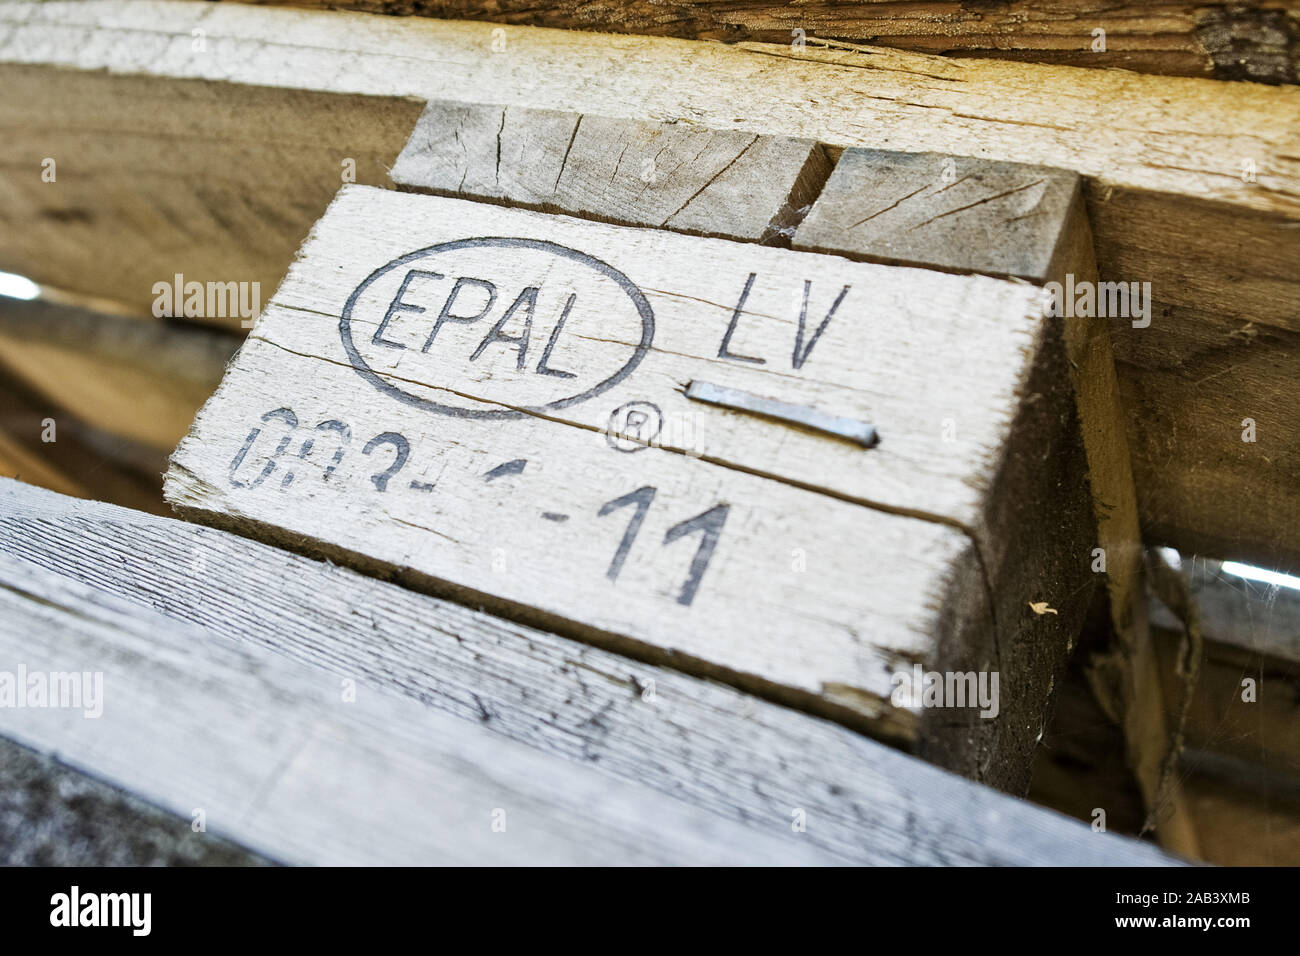 Kennzeichnung einer Europalette|Identification of a euro pallet| Stock Photo